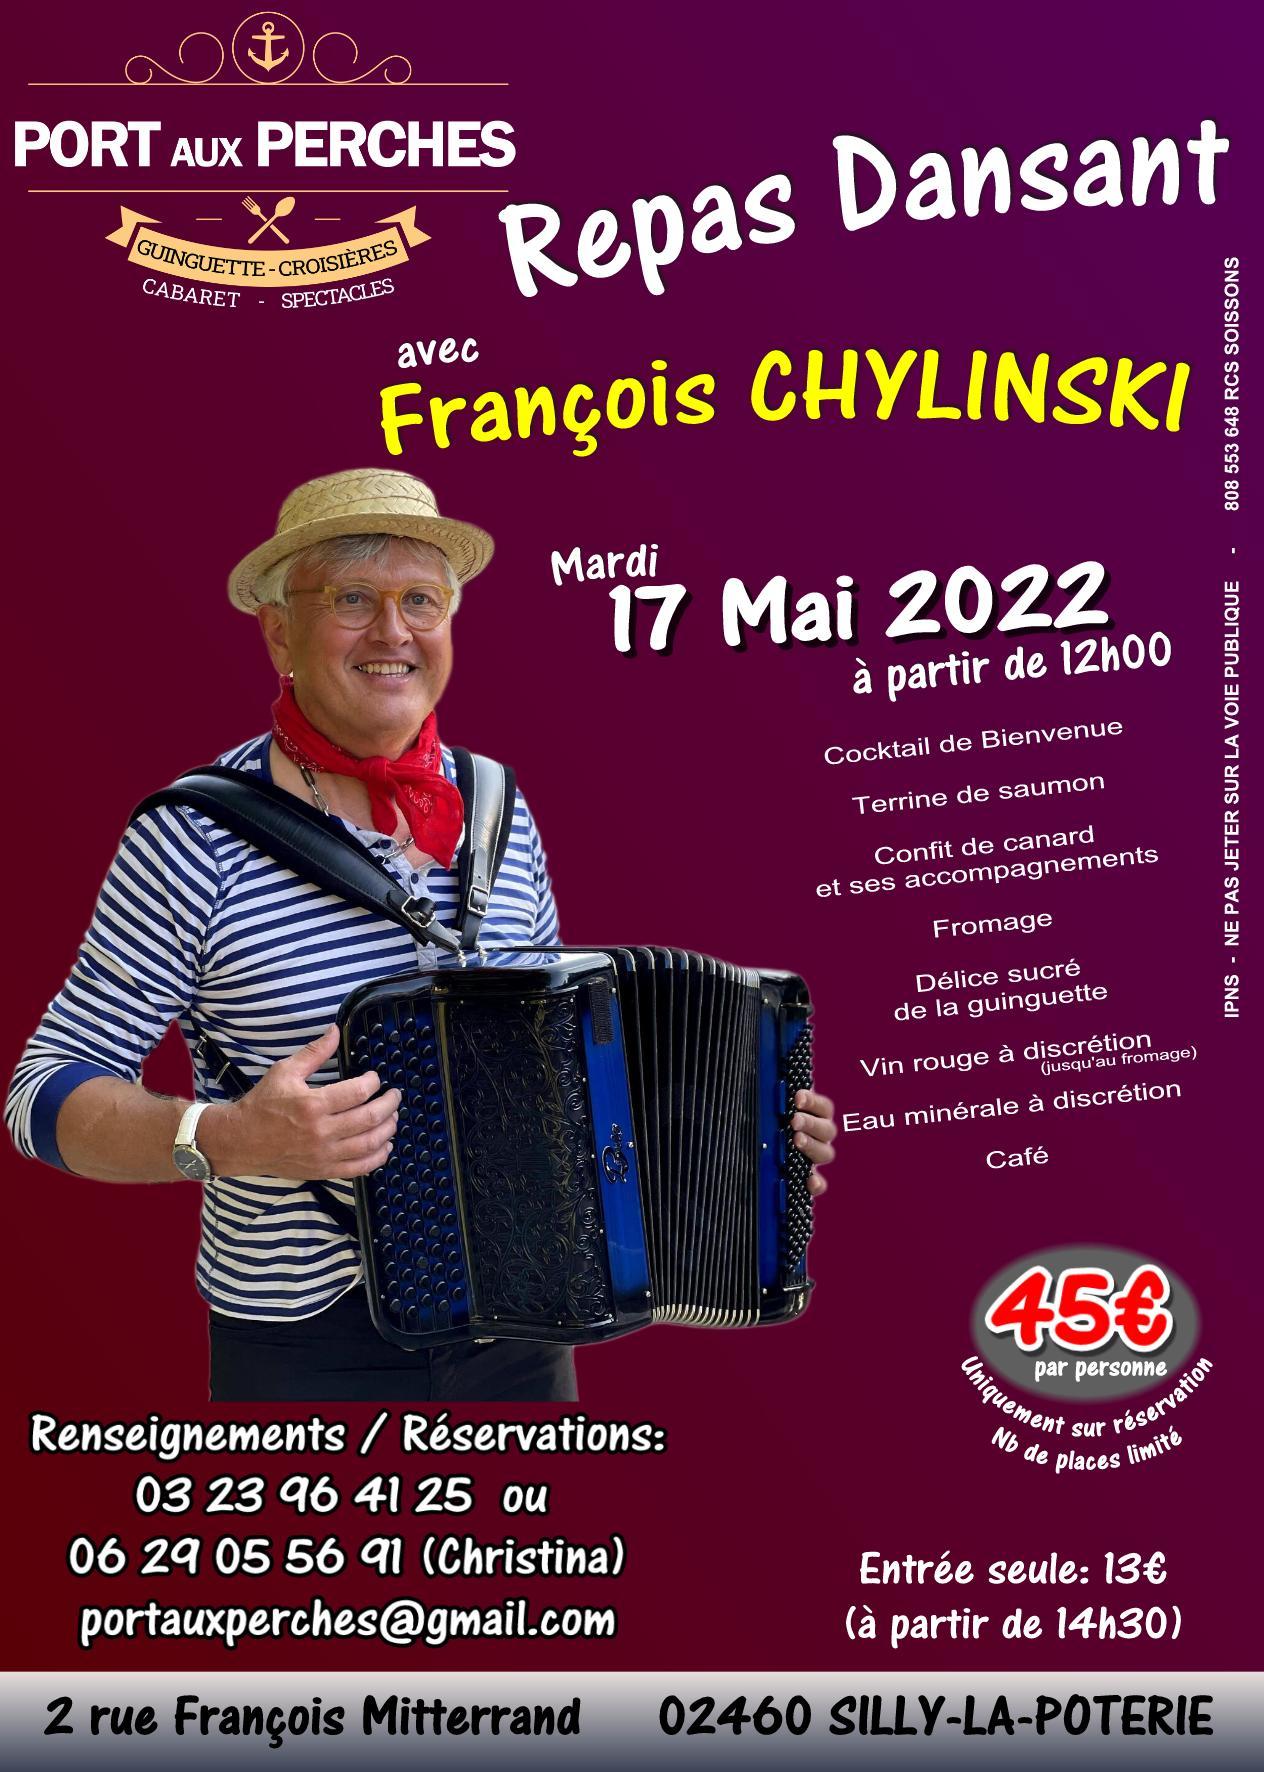 17 mai 2022 repas dansant francois chylinski port aux perches